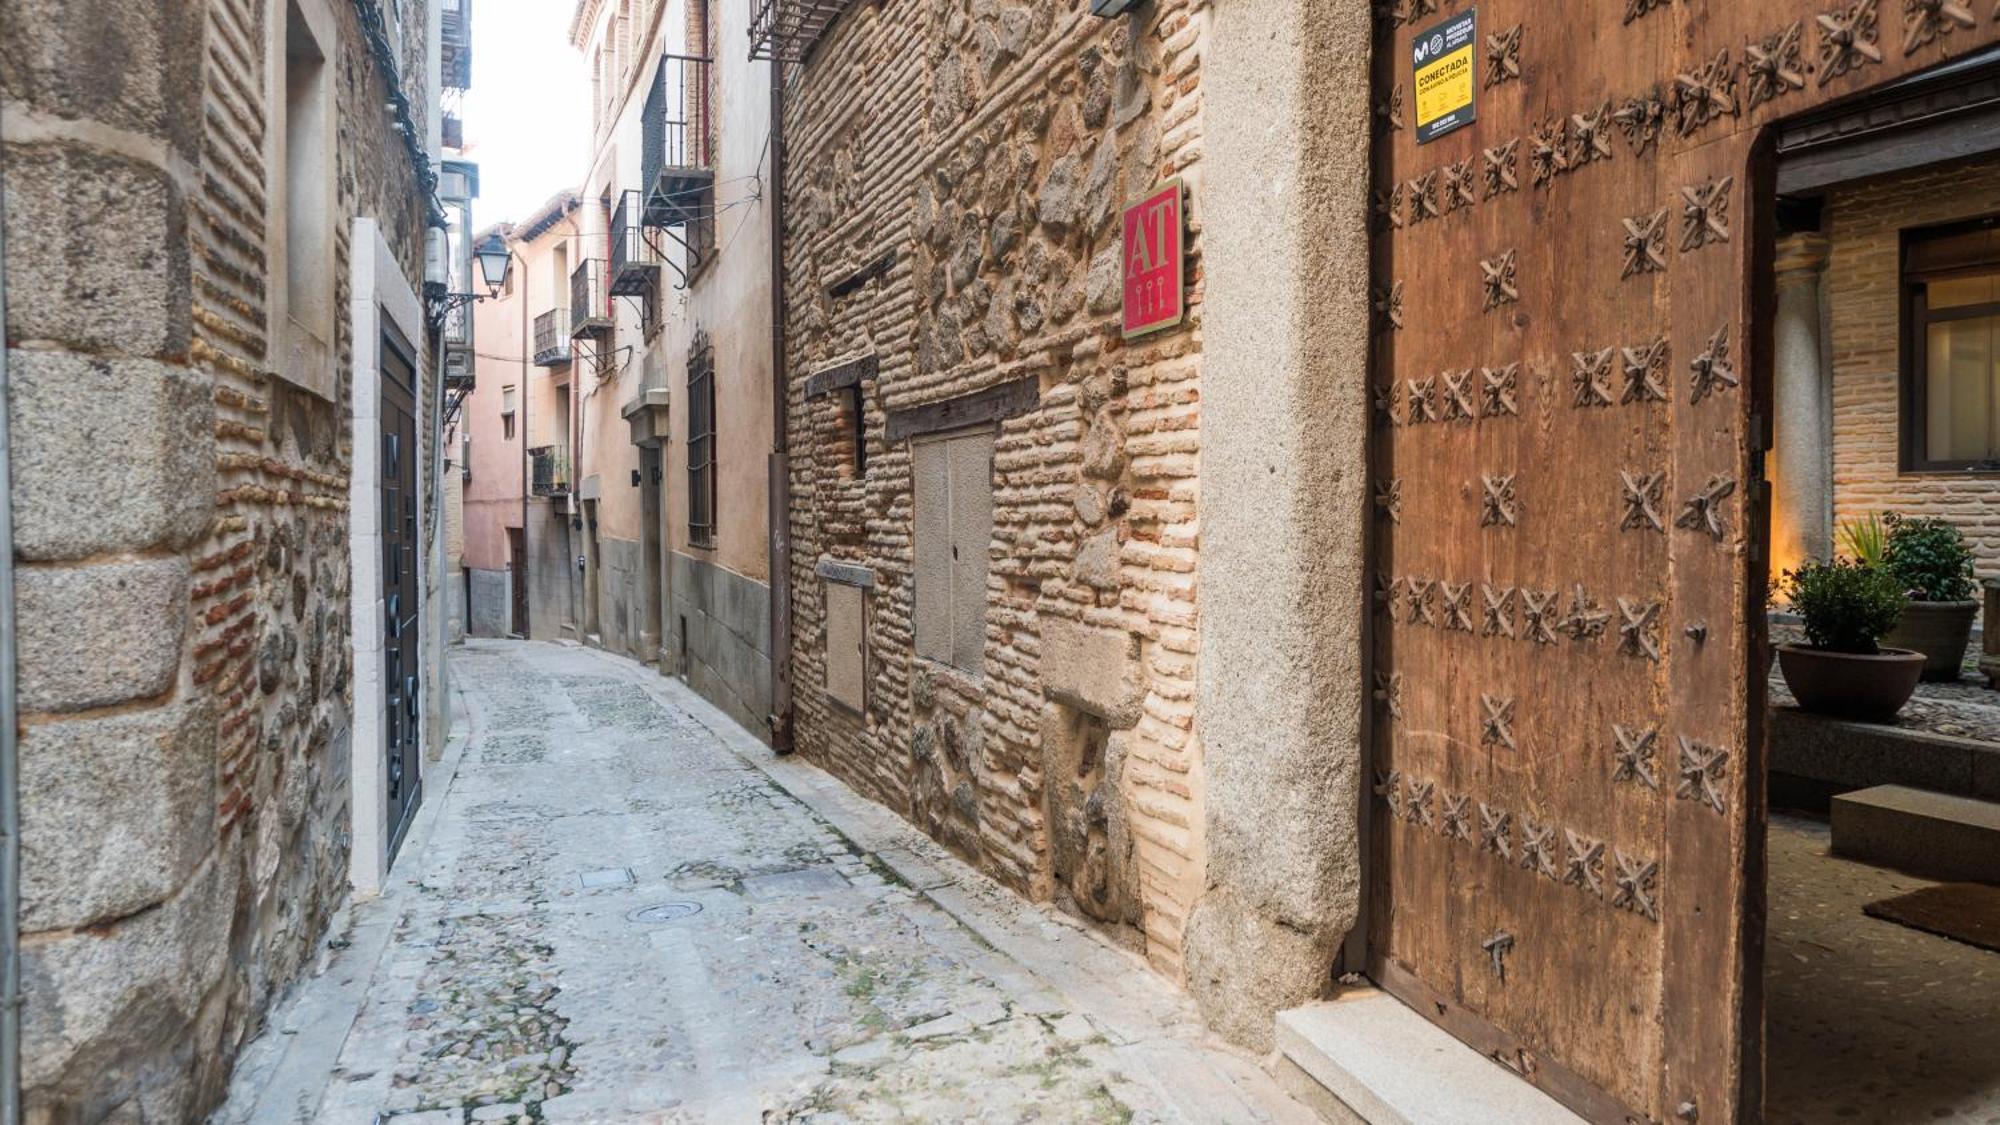 Casa De Los Mozarabes By Toledo Ap 외부 사진